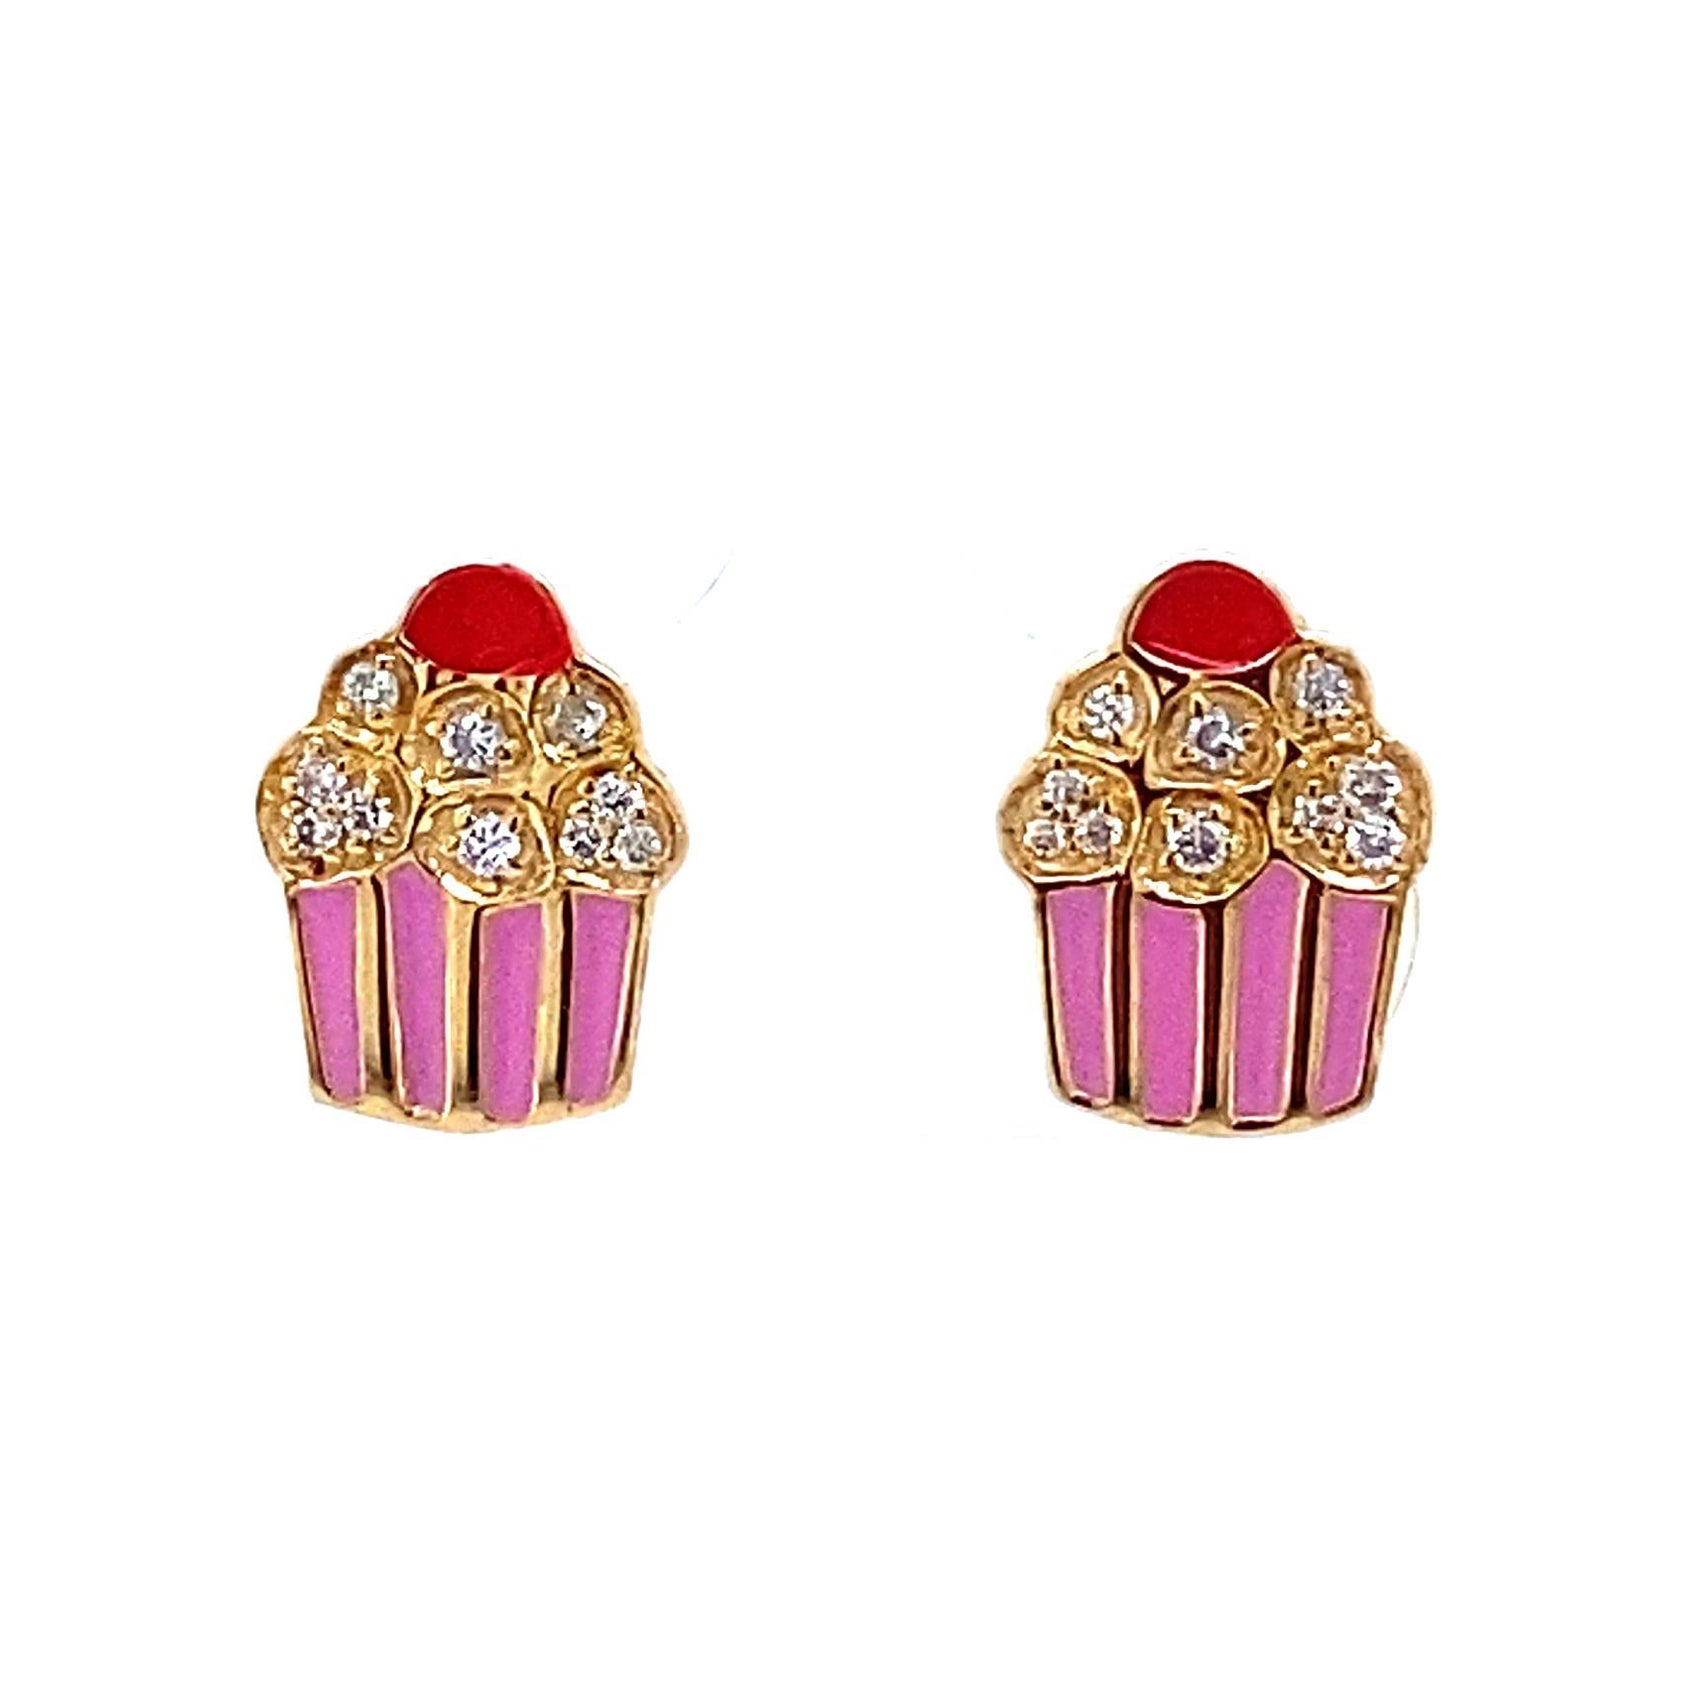 Emaillierte Cupcake-Diamant-Ohrringe mit geschliffenem Schliff für Mädchen/Kinder/Toddlers aus 18 Karat massivem Gold